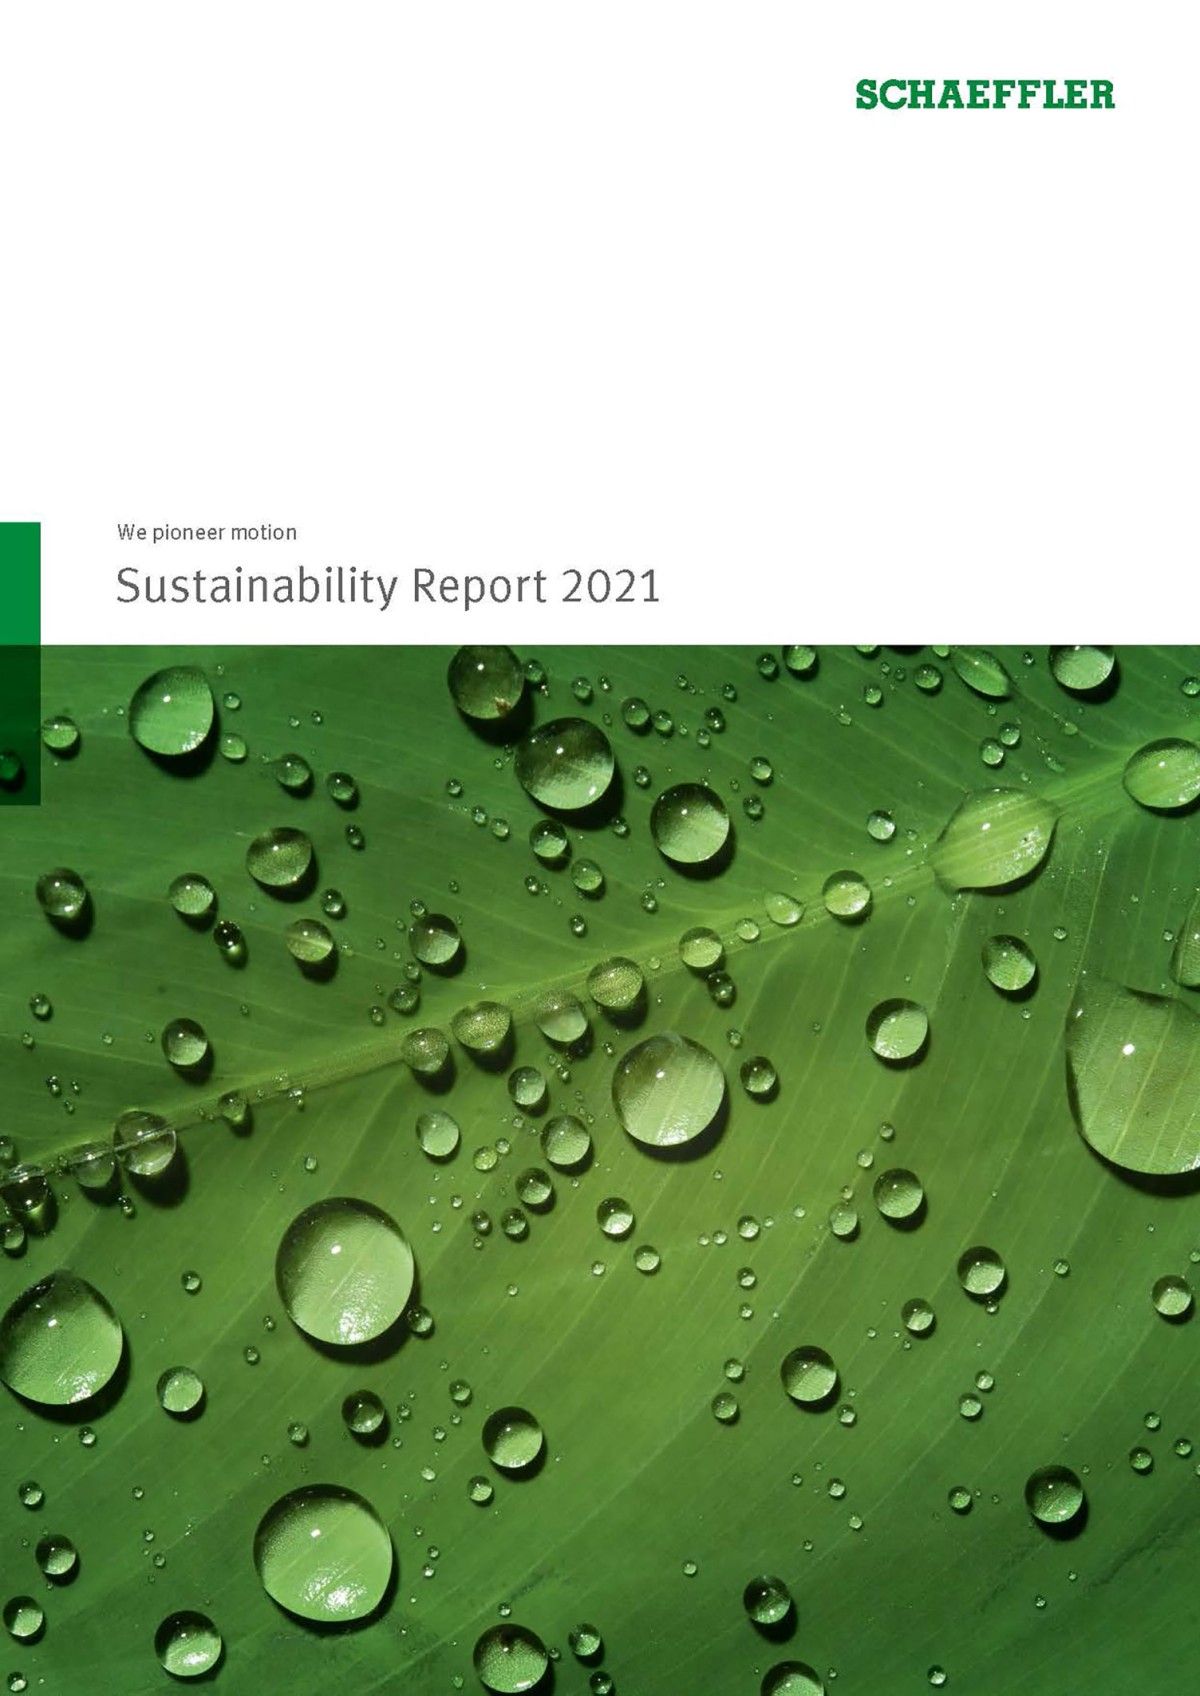 Schaeffler publica su Informe de sostenibilidad 2021